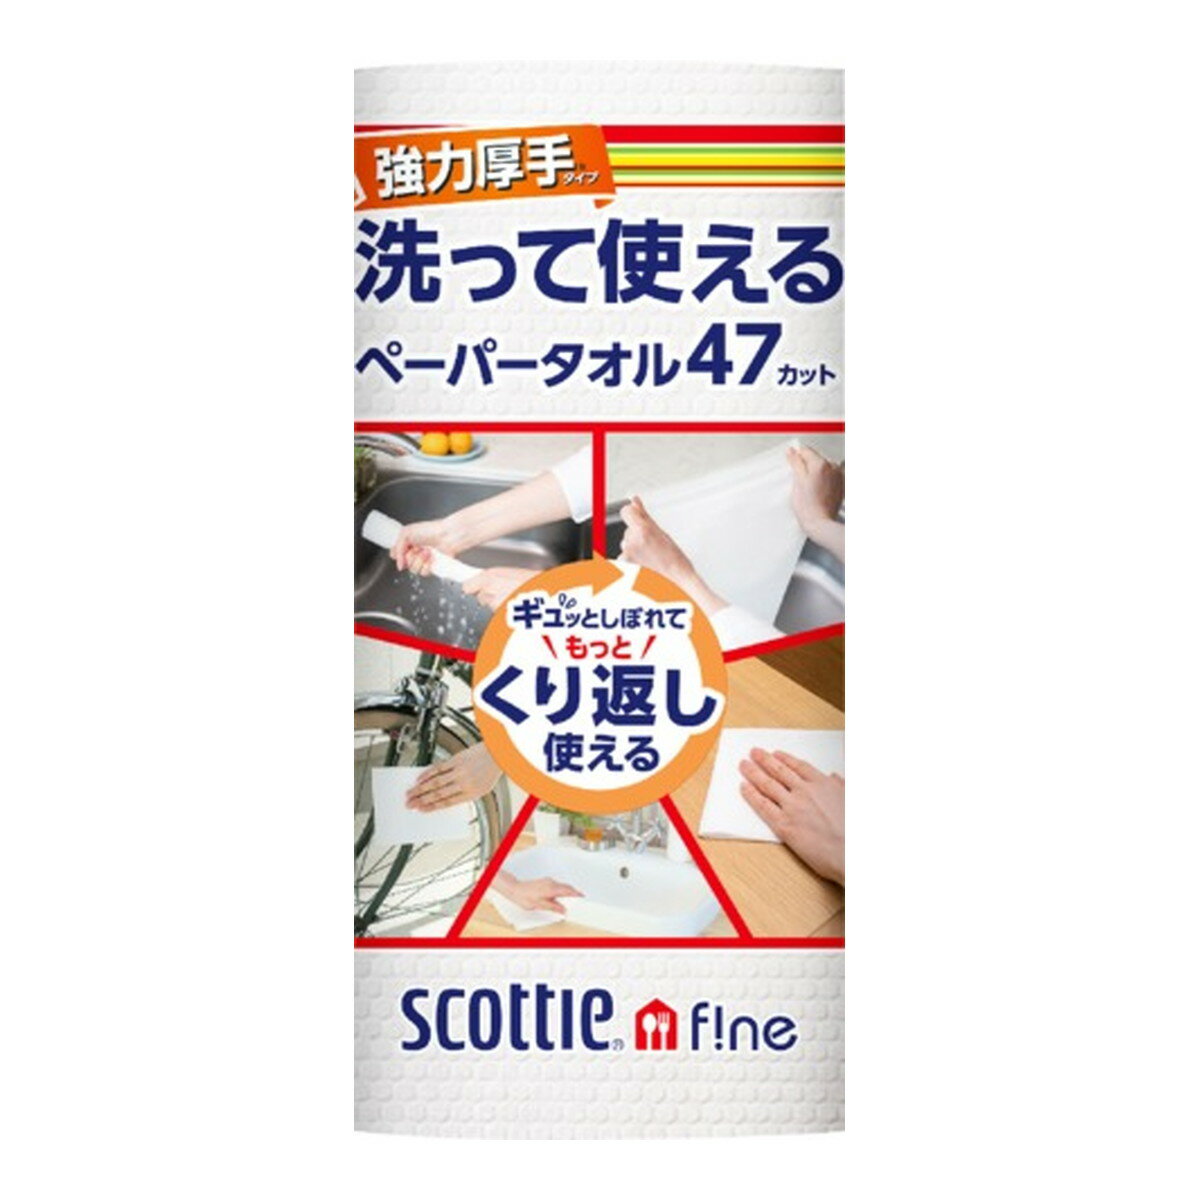 日本製紙 クレシア スコッティ ファイン 洗って使える ペーパータオル 強力厚手 47カット× 1ロール